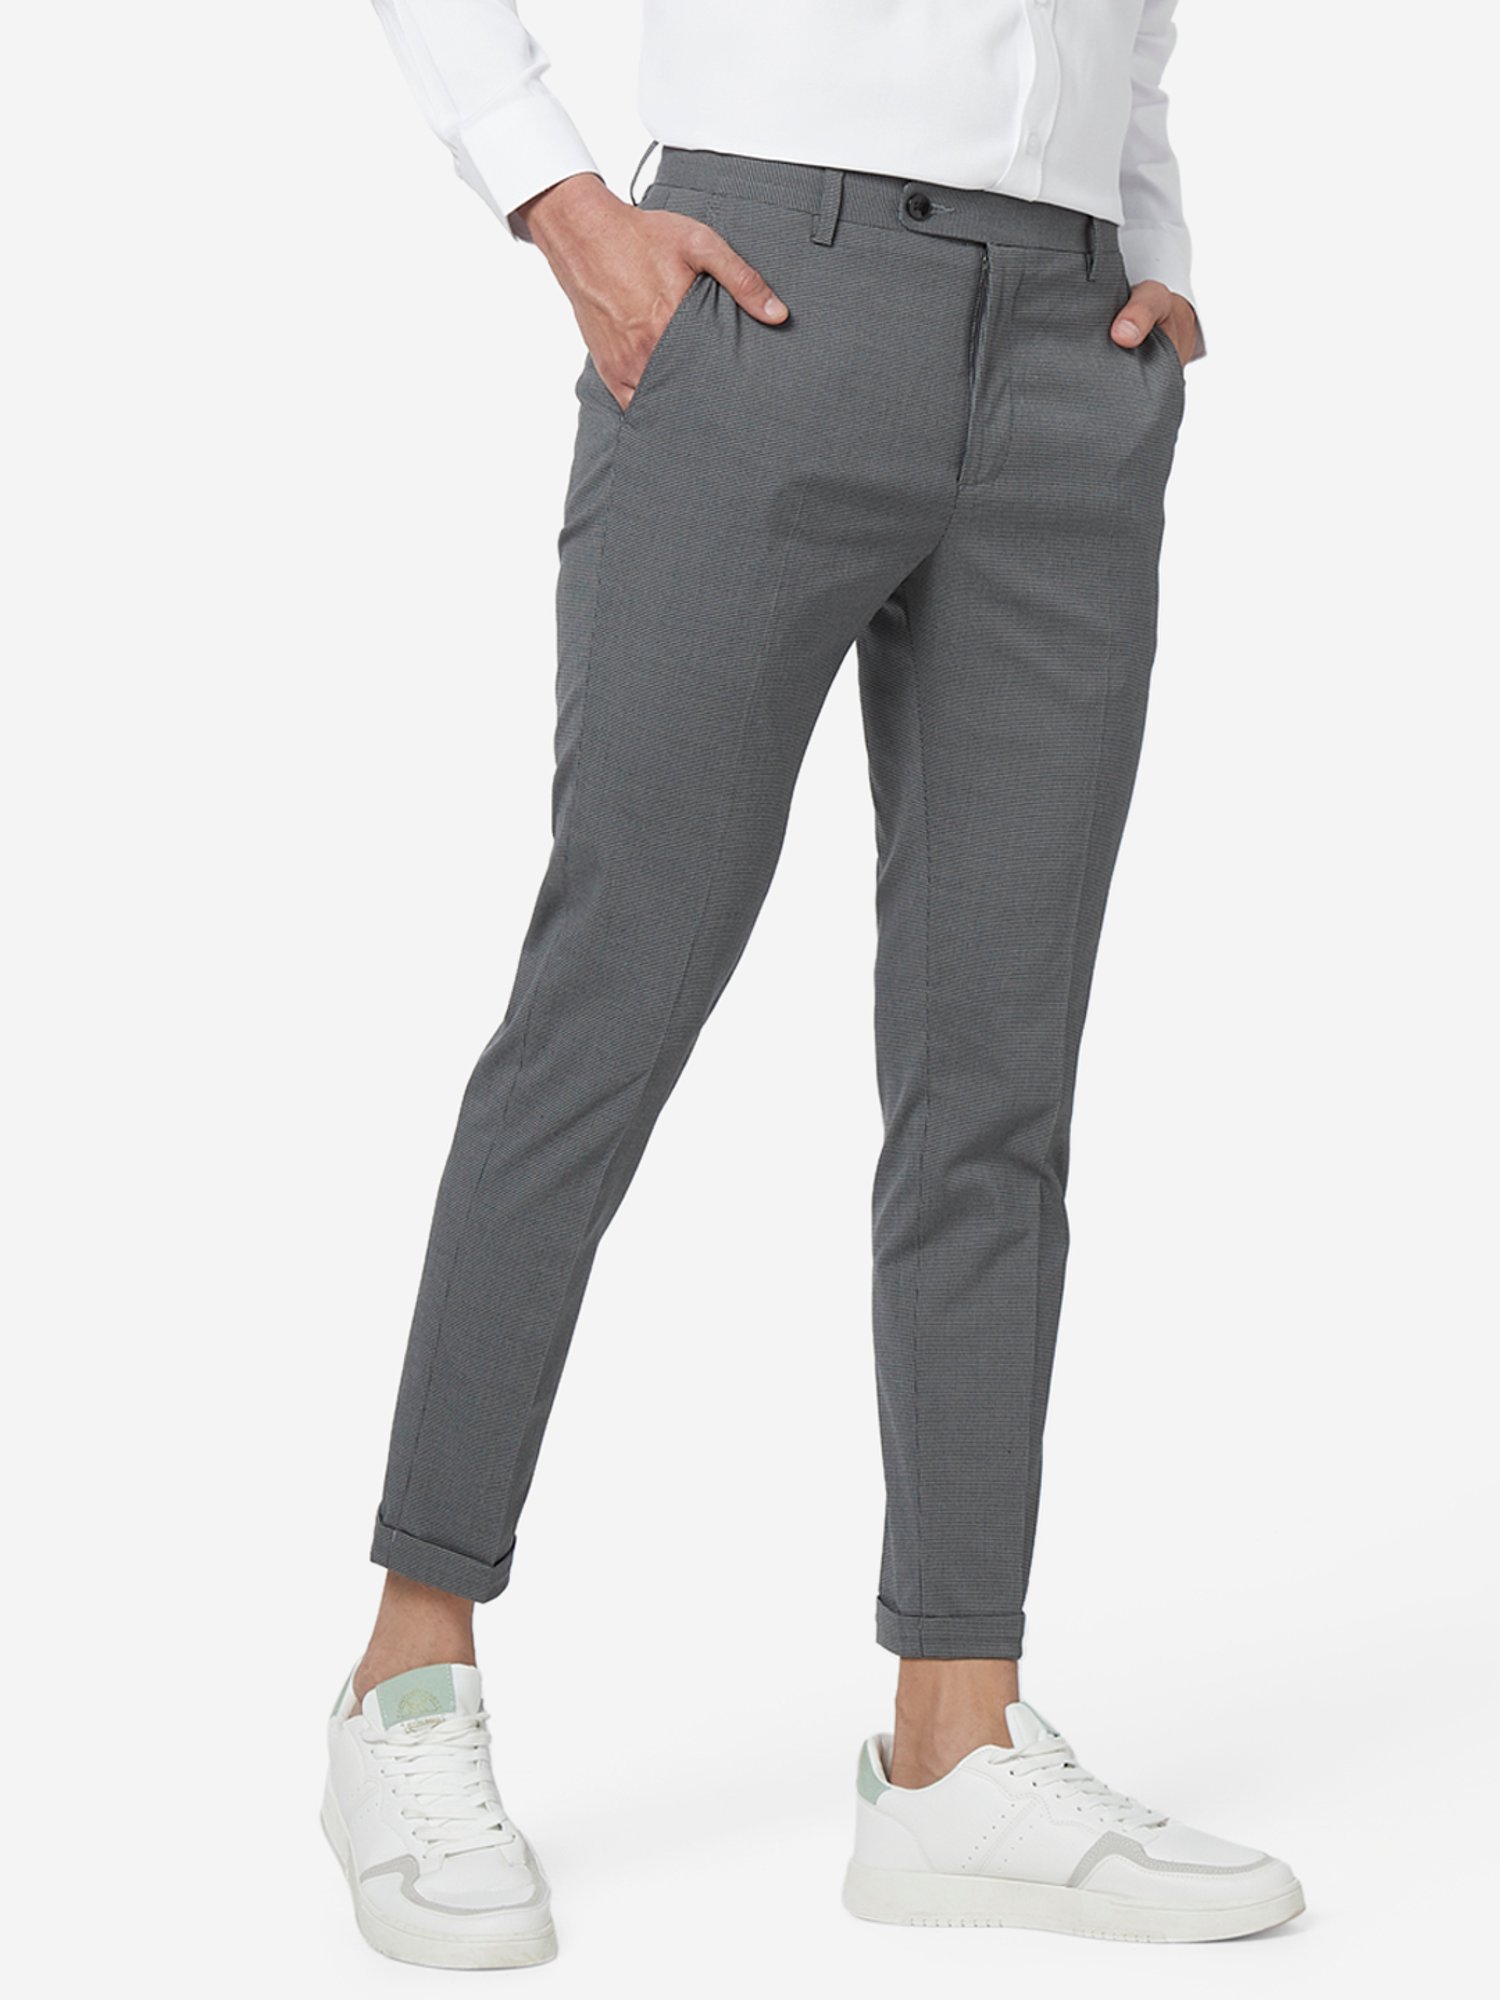 Buy Hangup Grey Regular Fit Printed Trousers for Mens Online  Tata CLiQ